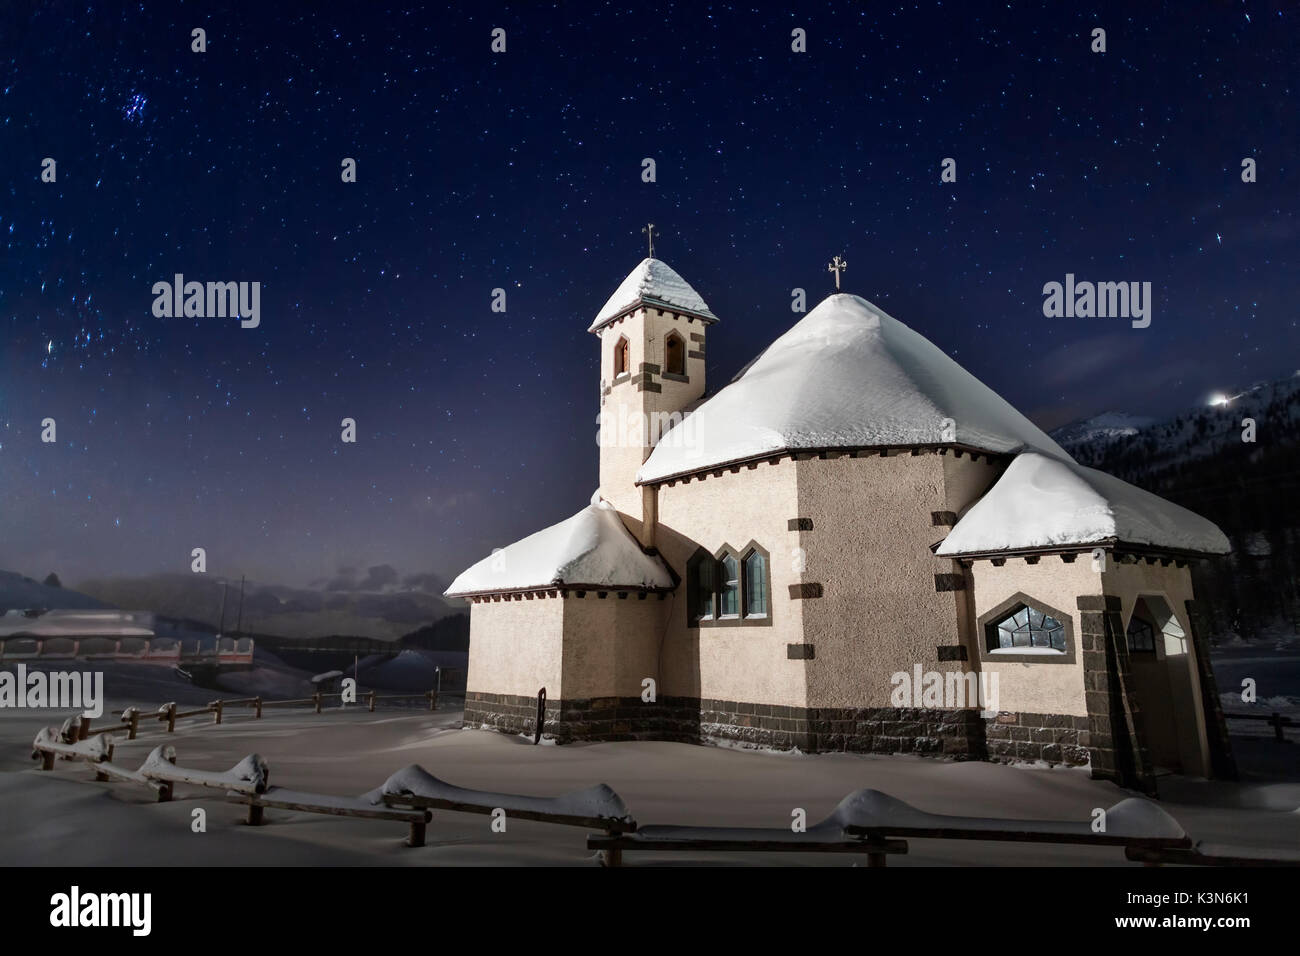 Die kleine Kirche von San Pellegrino Pass, zwischen Agordino und Fassa Tal in den Dolomiten, Trentino. Einen kalten Winter Abend mit klaren Himmel und Sterne. Veneto / Trentino, Italien Stockfoto